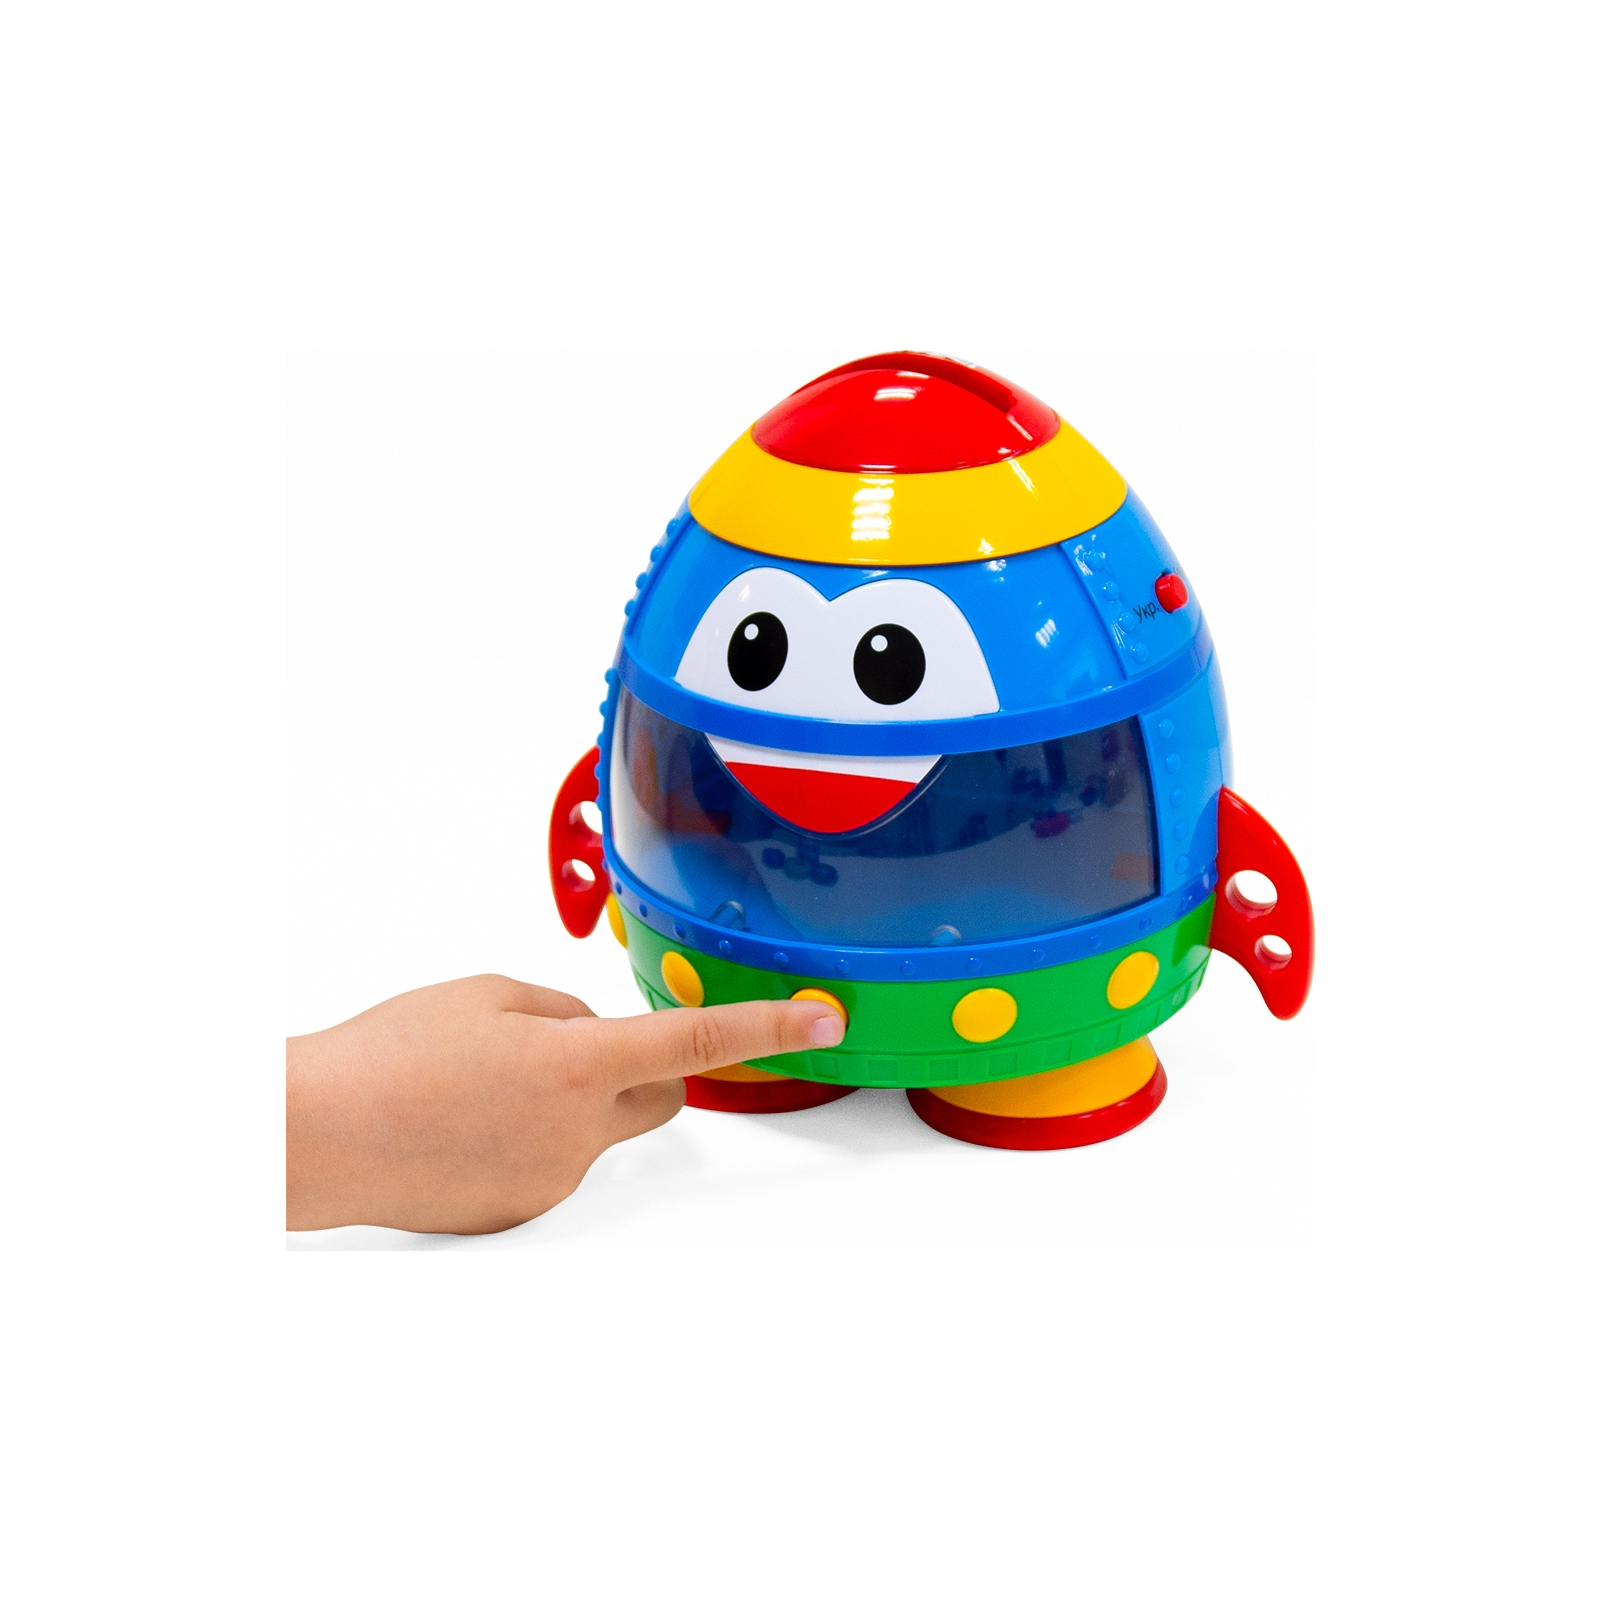 Развивающая игрушка Kiddi Smart Интерактивная обучающая игрушка Smart-Звездолет украинский и английский язык (344675) изображение 10